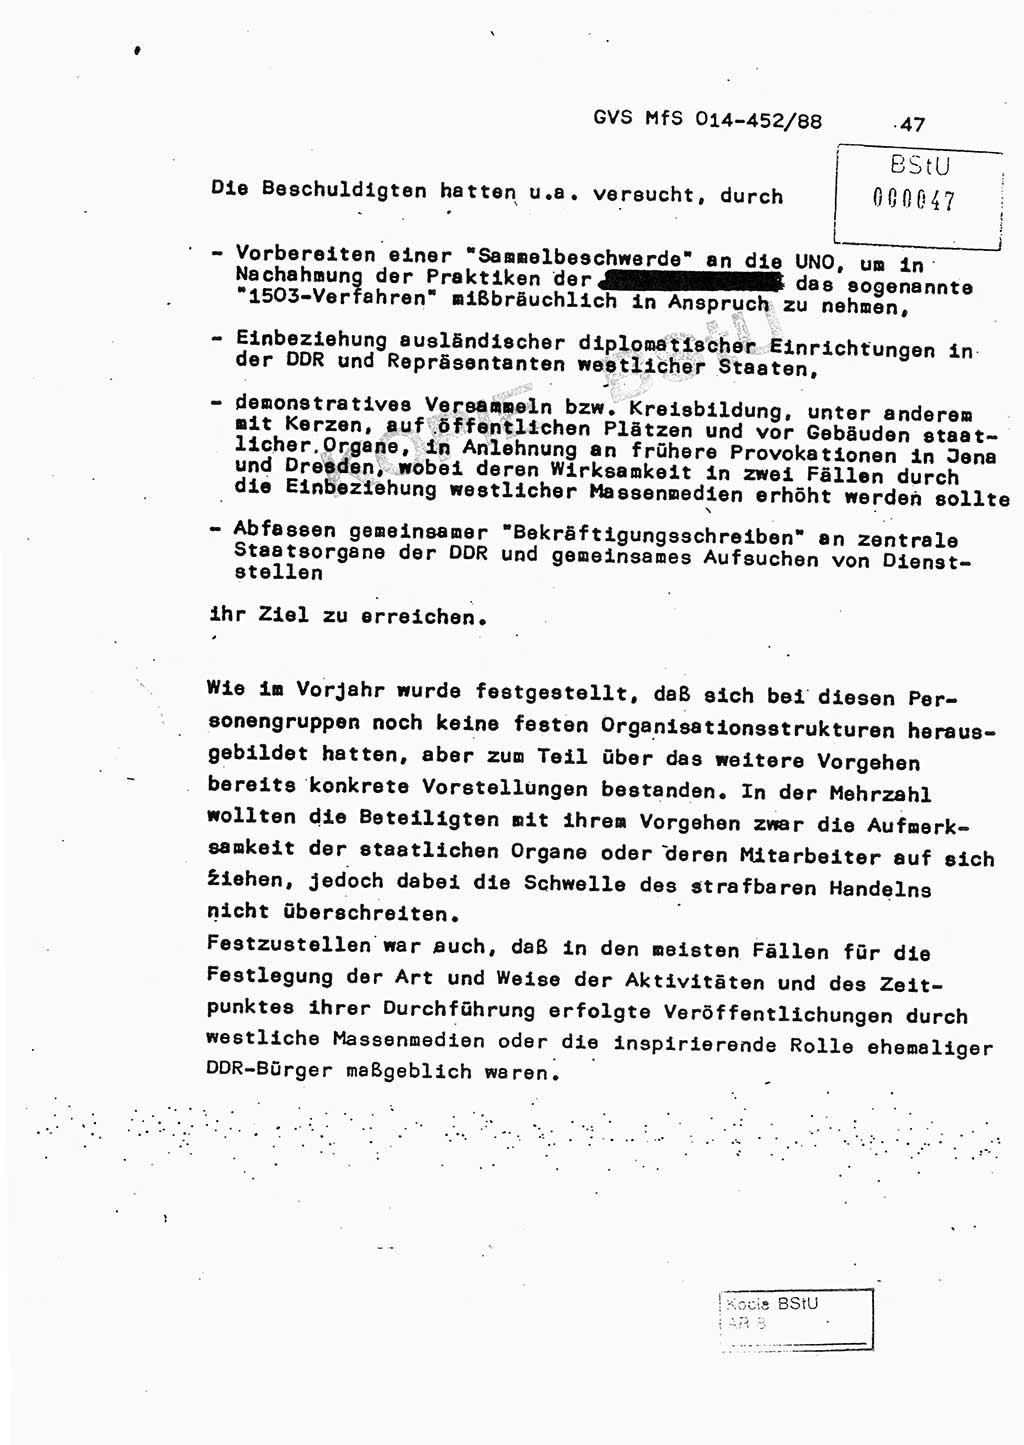 Jahresbericht der Hauptabteilung (HA) Ⅸ 1987, Einschätzung der Wirksamkeit der Untersuchungsarbeit im Jahre 1987, Ministerium für Staatssicherheit (MfS) der Deutschen Demokratischen Republik (DDR), Hauptabteilung Ⅸ, Geheime Verschlußsache (GVS) o014-452/88, Berlin 1988, Seite 47 (Einsch. MfS DDR HA Ⅸ GVS o014-452/88 1987, S. 47)